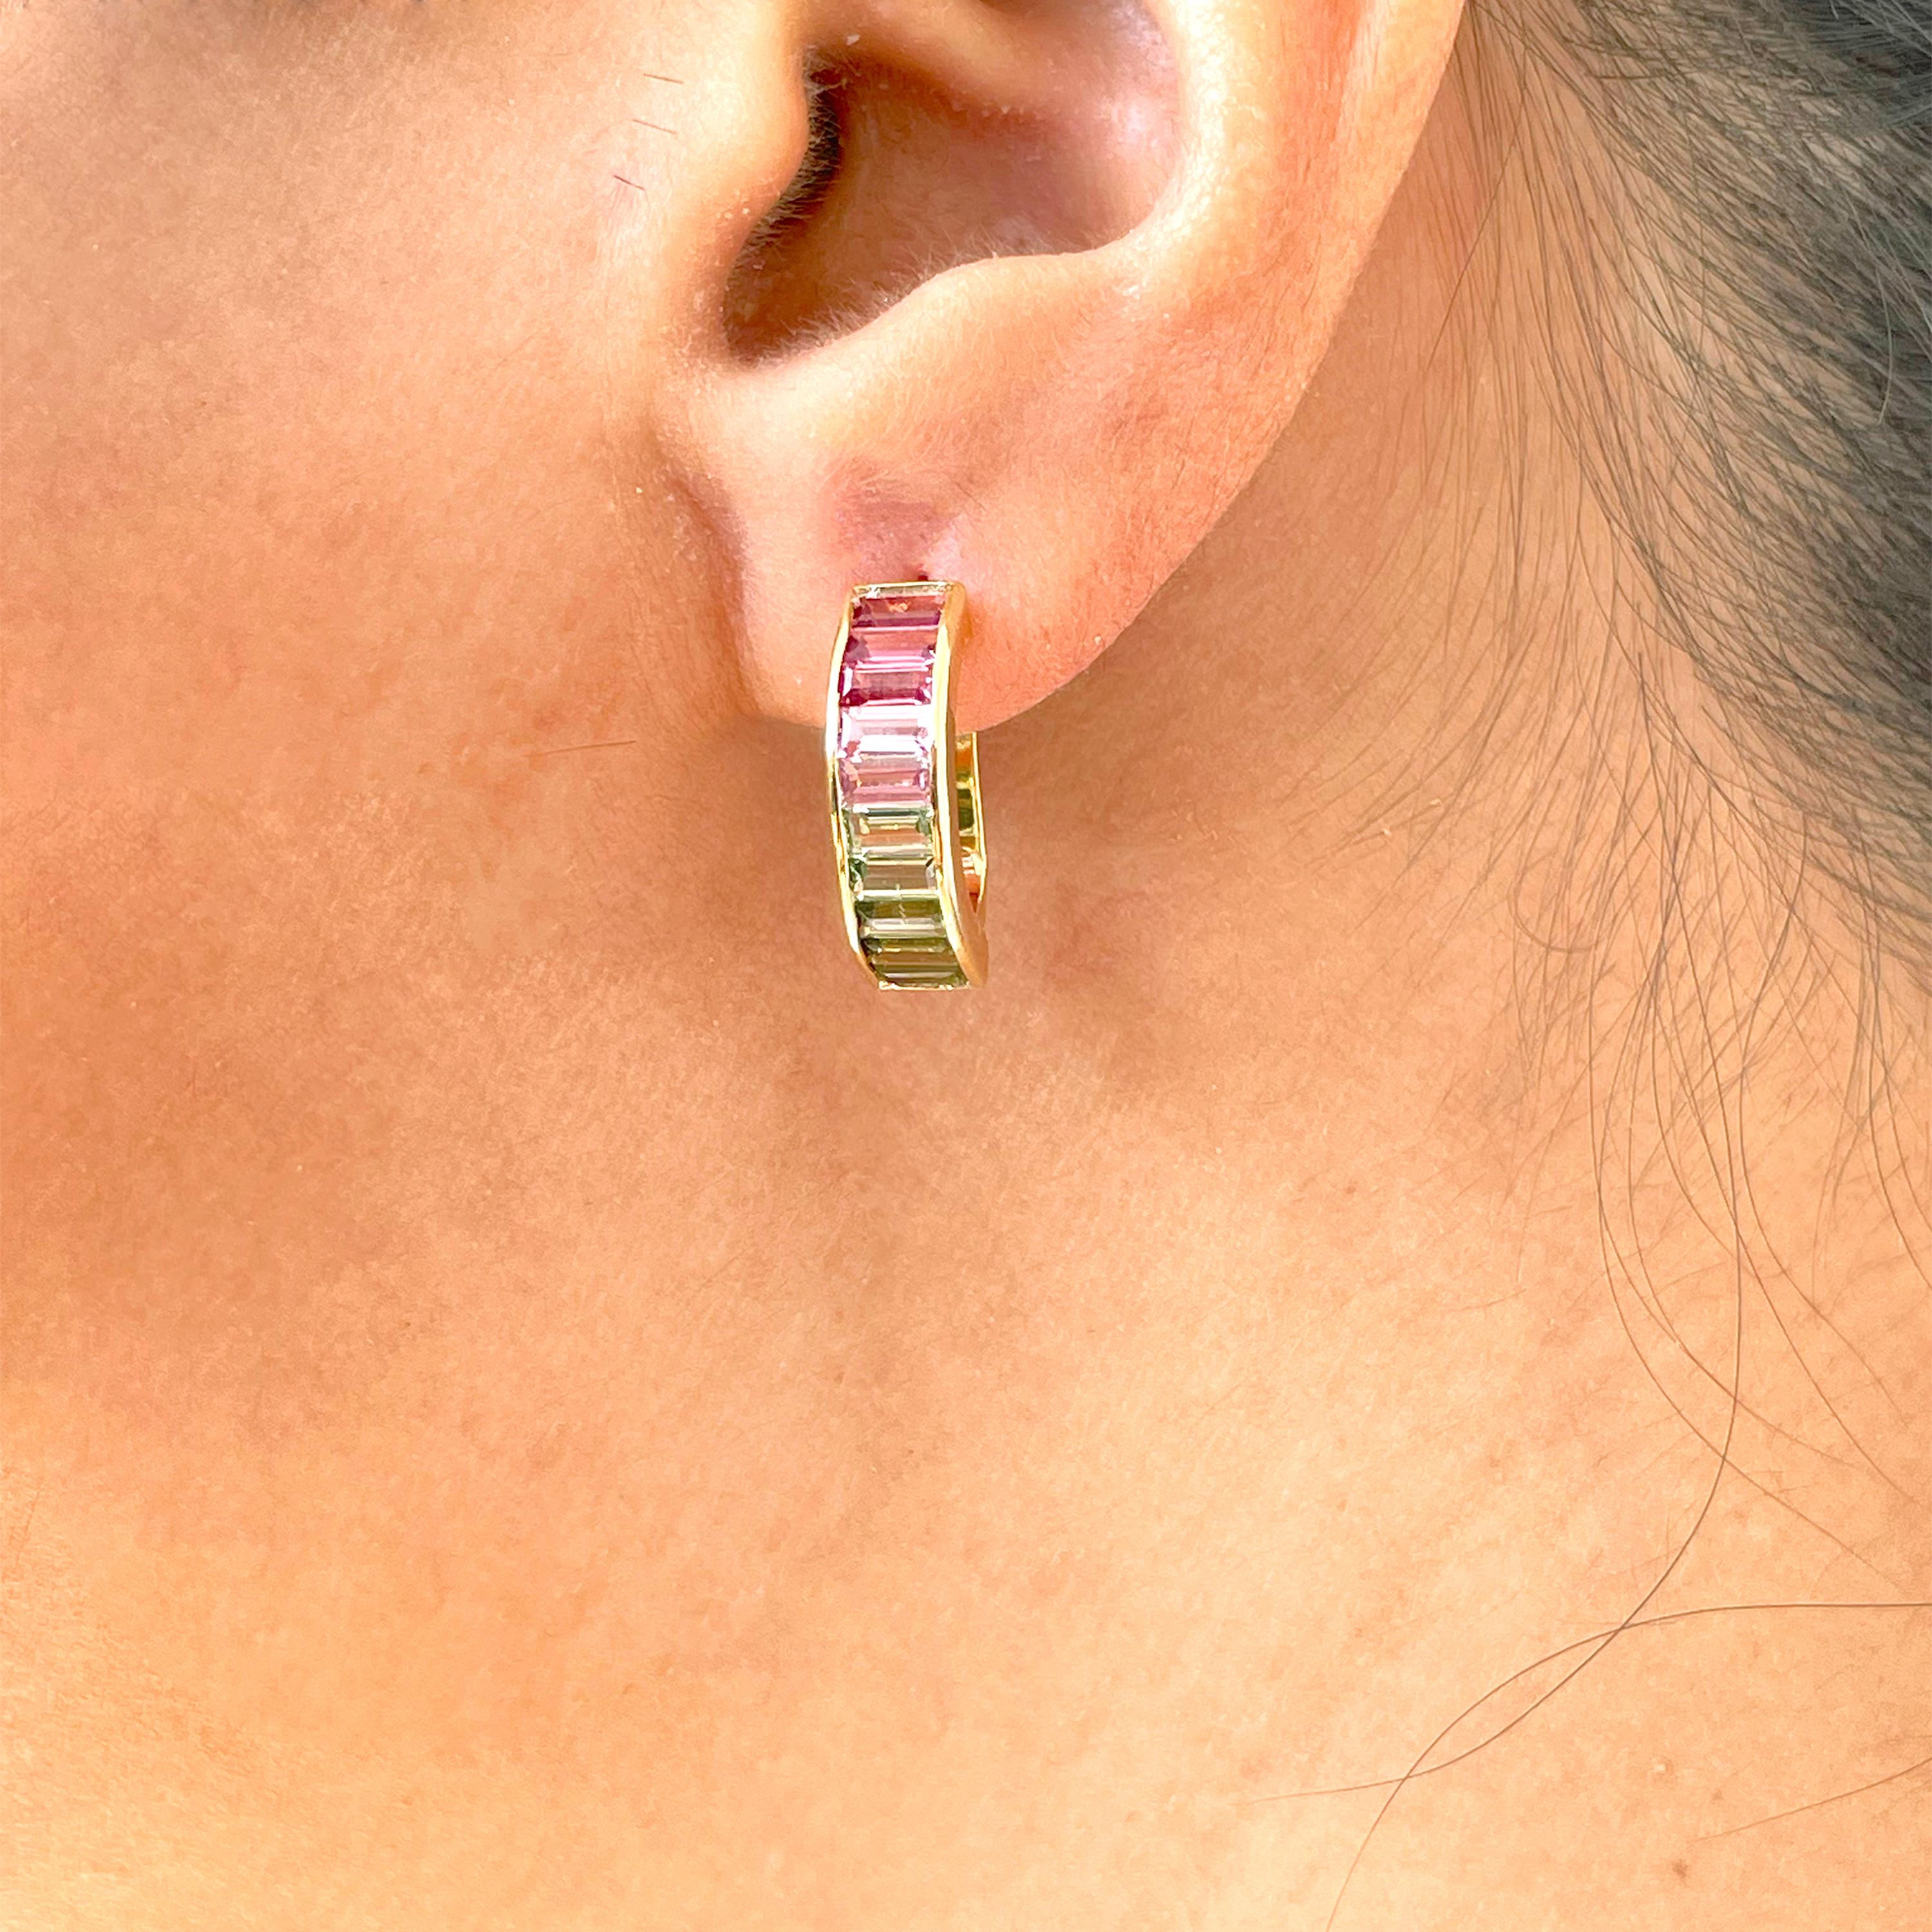 18 Karat Gelbgold grün-rosa zweifarbige Turmalin-Ohrringe mit linearem Reif

Fügen Sie Ihrem Schmuckkästchen etwas Besonderes hinzu mit den einzigartigen Wassermelonen-Bi-Color-Turmalin-Huggie Hoop-Ohrringen. Dieses klassische, lineare Design aus 18